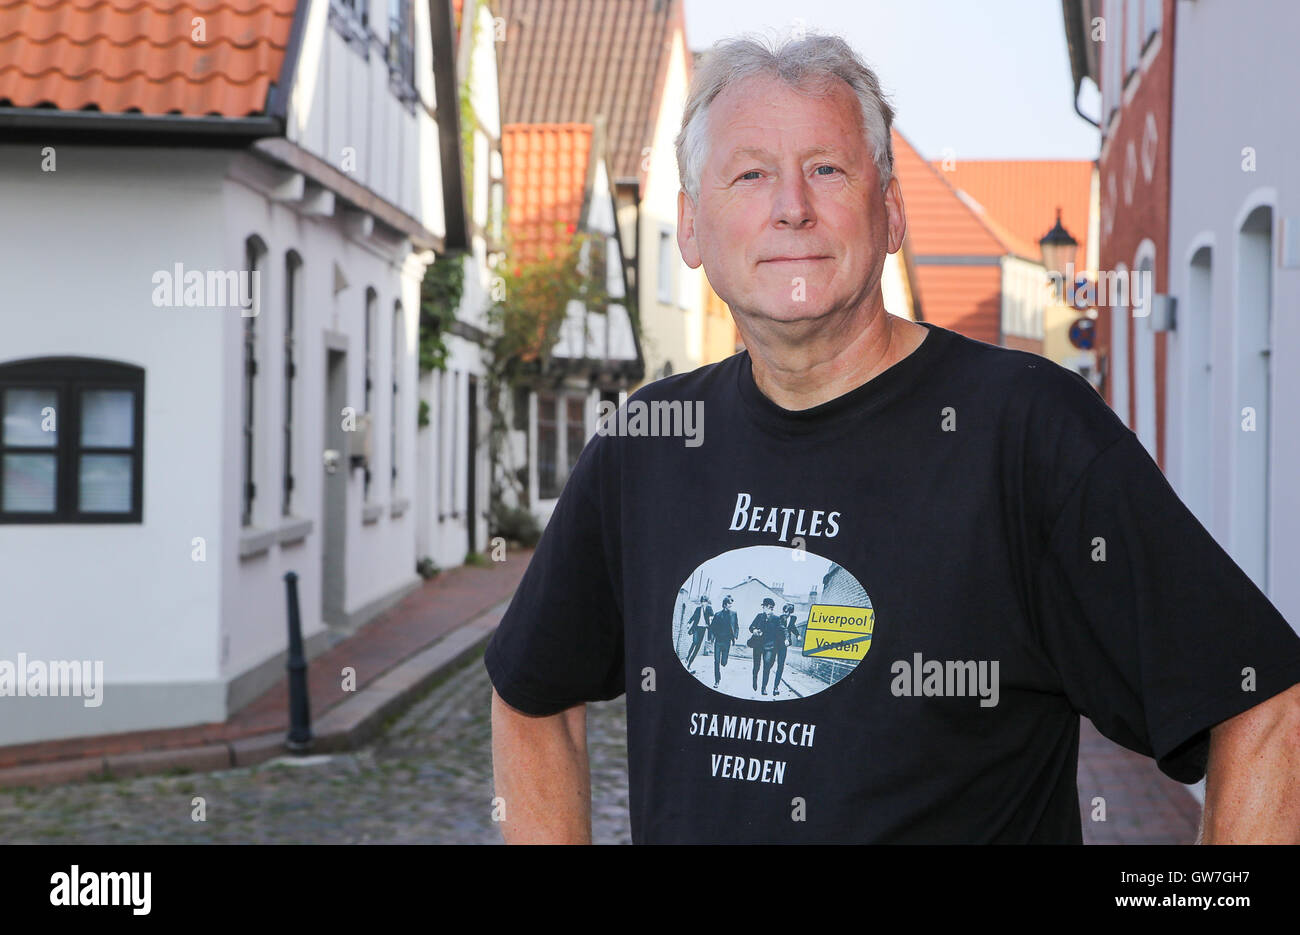 Verden, Allemagne. Sep 9, 2016. Harry Schwertner, co-fondateur de The Beatles groupe de réguliers à Verden, pose dans la vieille ville de Passau, Allemagne, le 9 septembre 2016. Plusieurs scènes de la déplacer 'Comment j'ai gagné la guerre" avec John Lennon ont été tournées dans la ville en septembre 1966. La chambre à l'arrière-plan (l) peut être vu dans le film. Photo : Focke Strangmann/dpa/Alamy Live News Banque D'Images